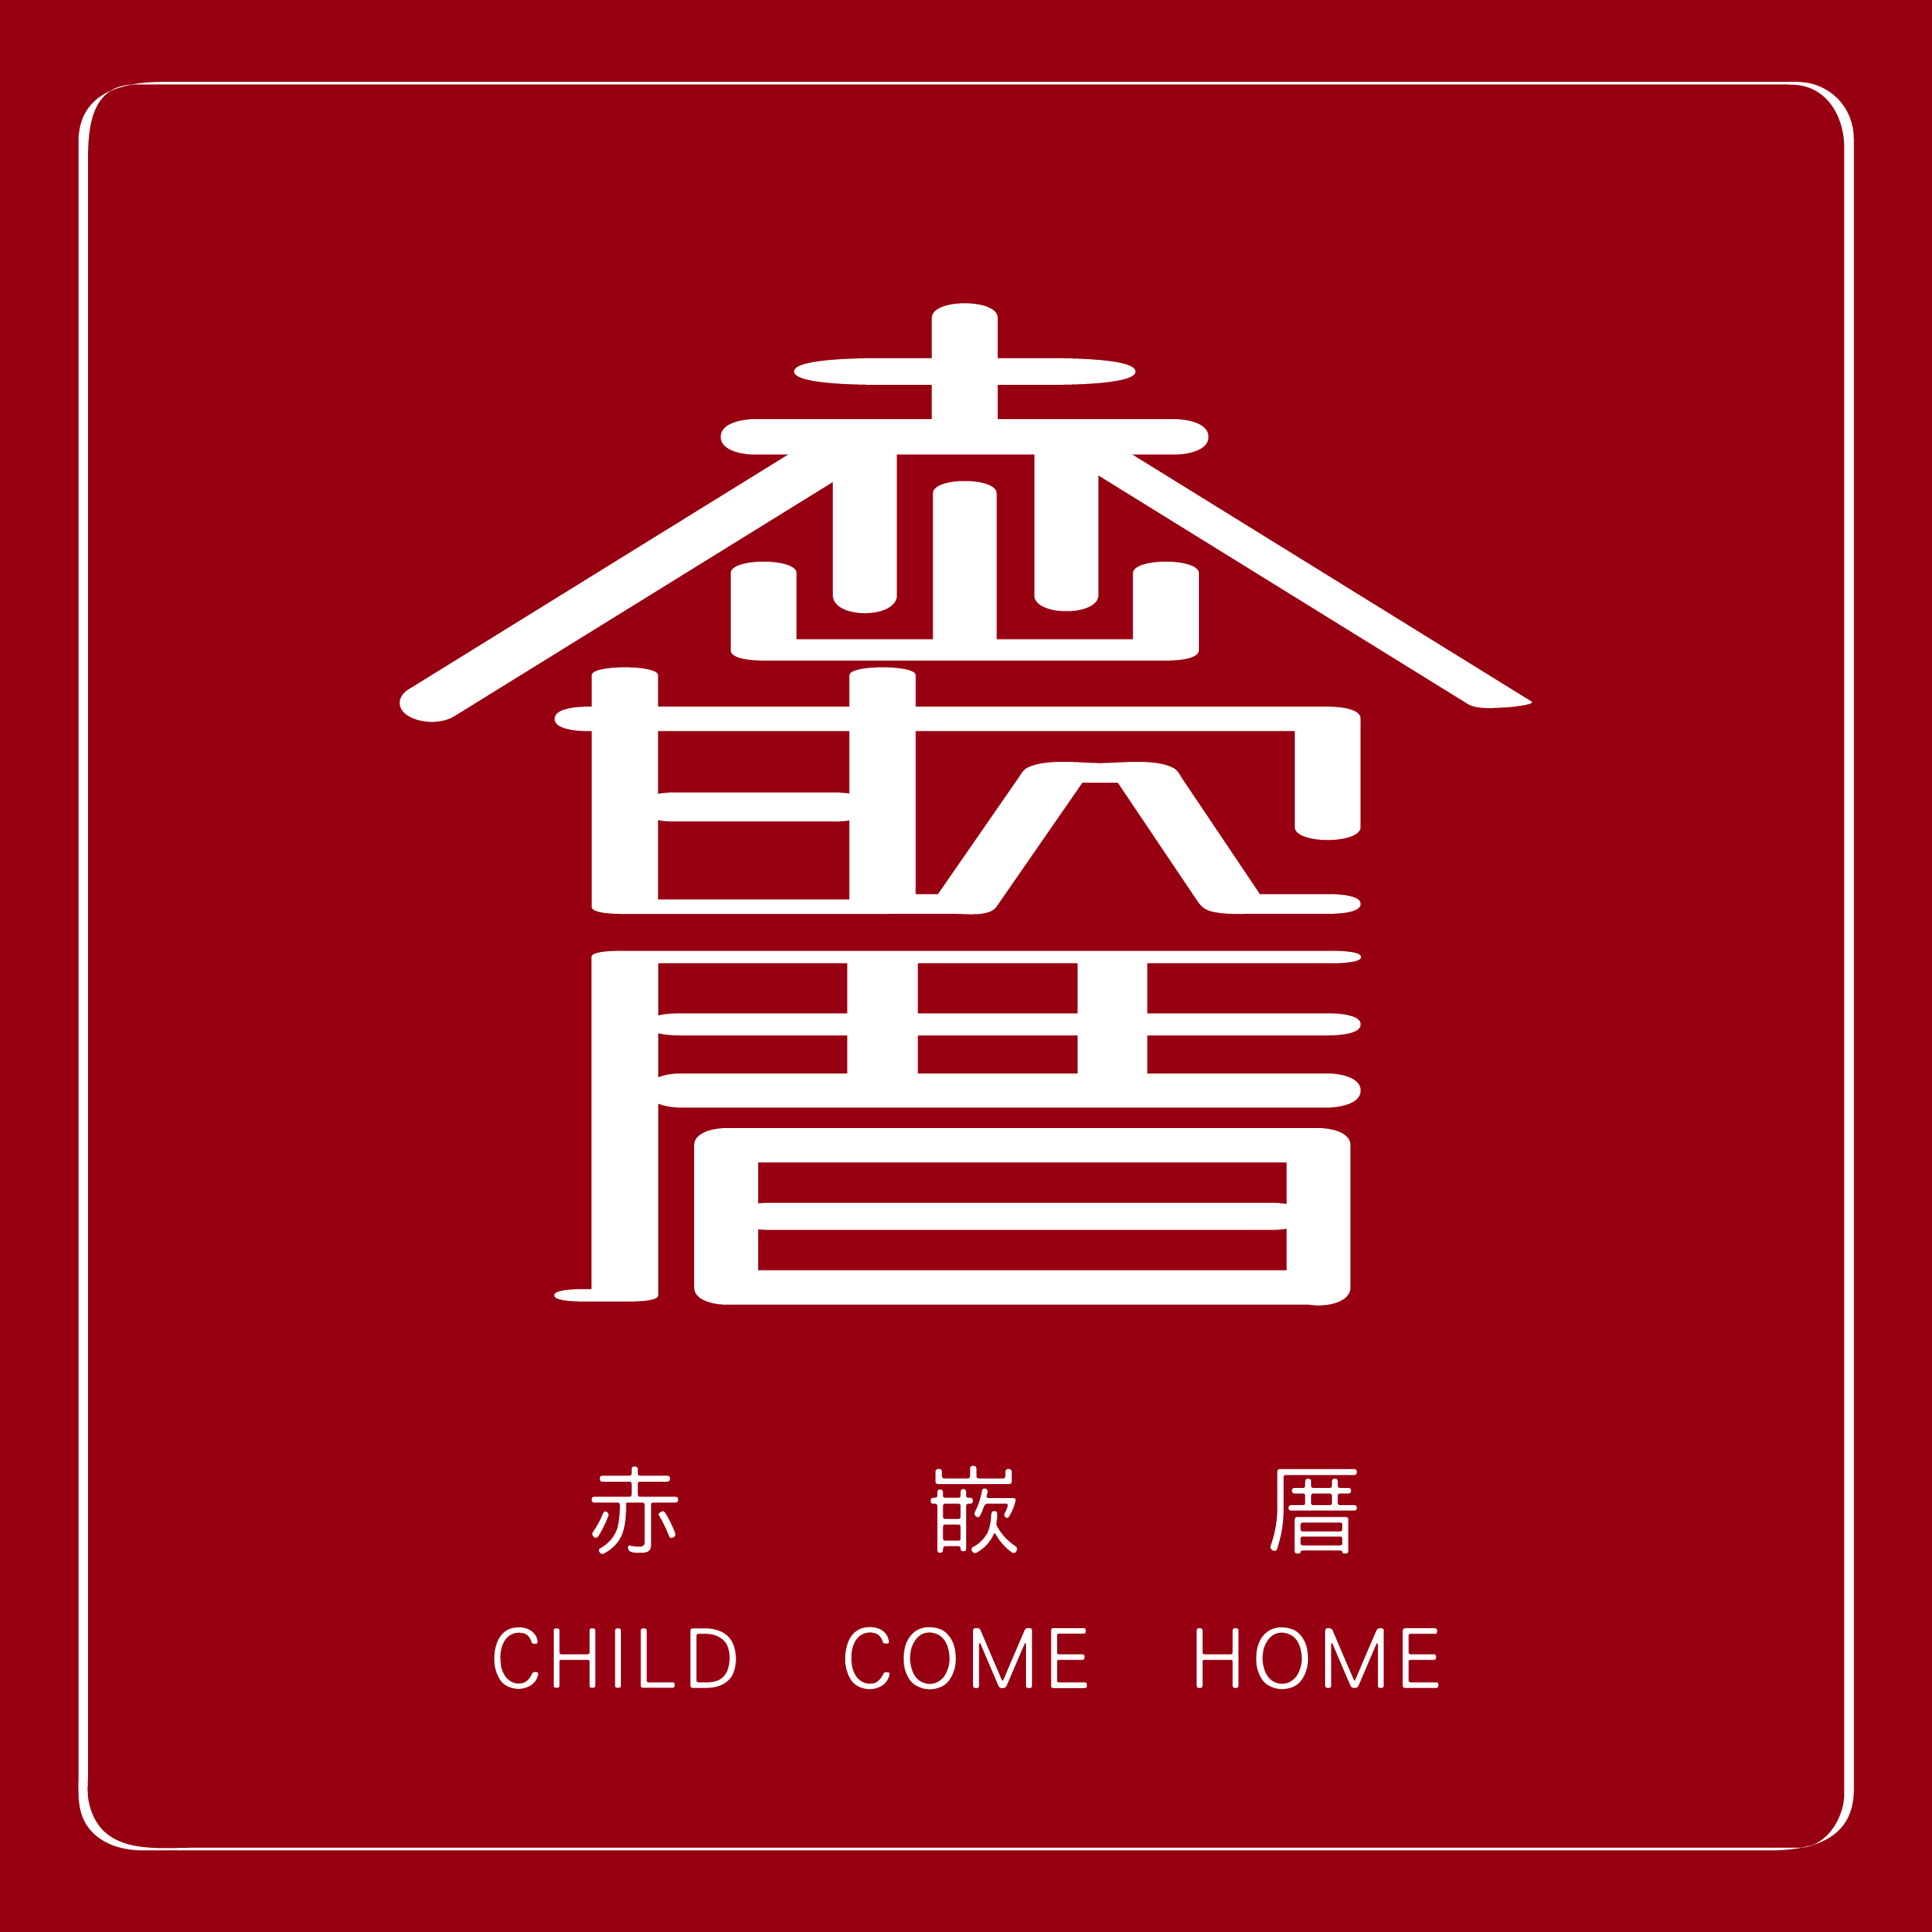 CHILD COME HOME